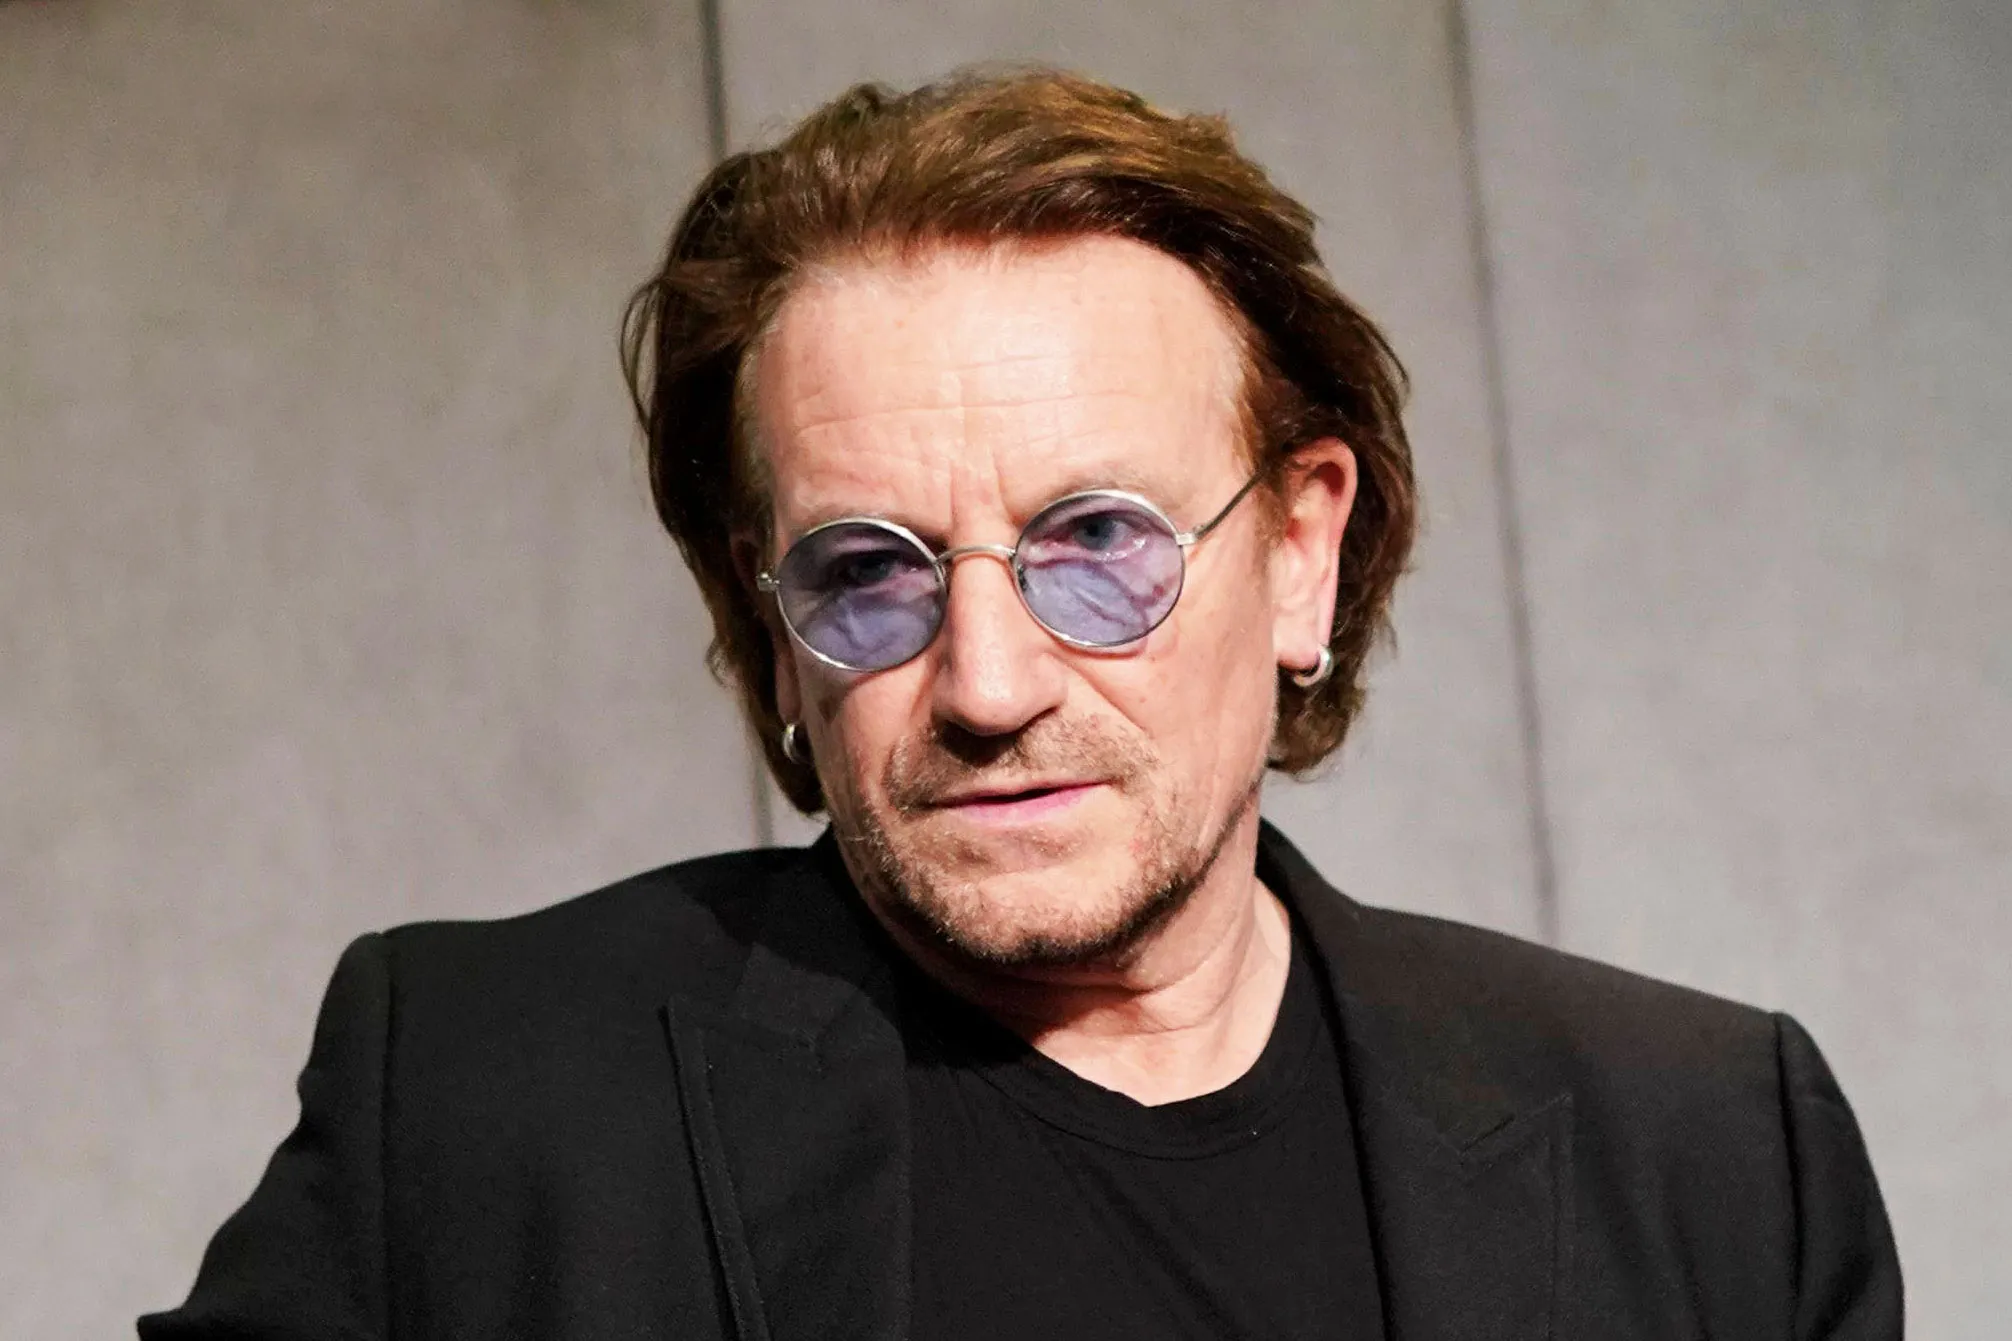 Bono singer